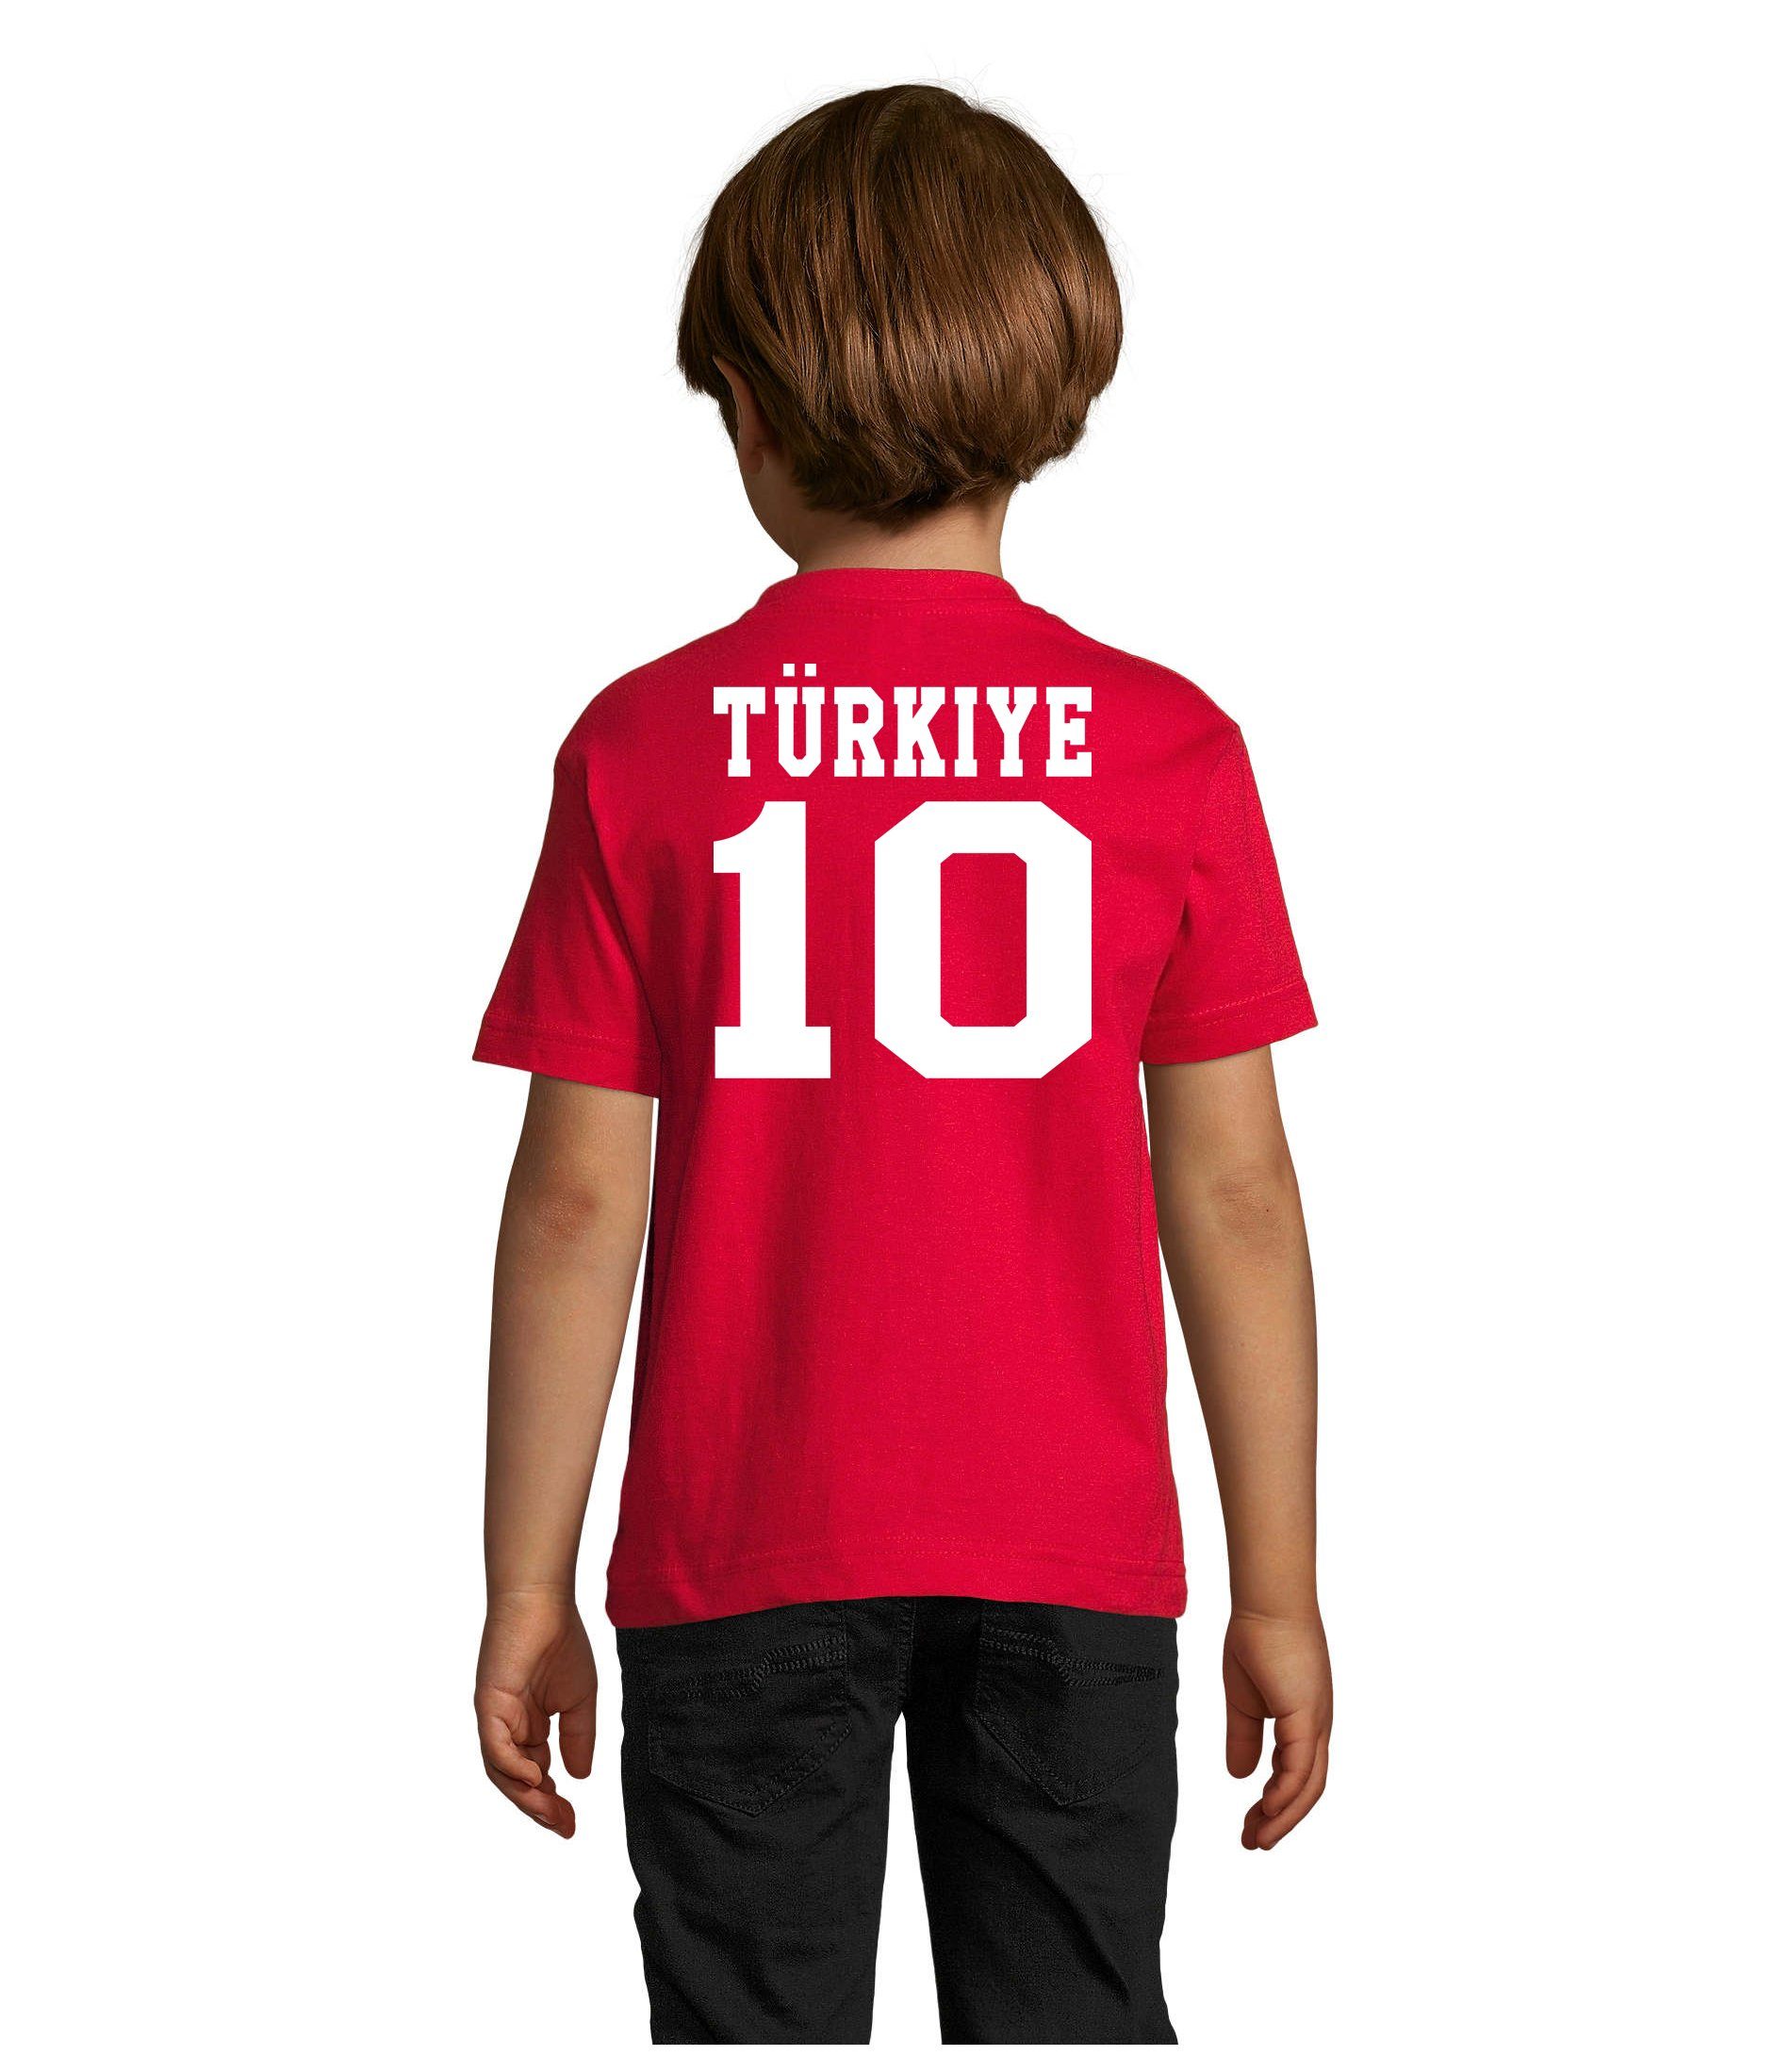 Blondie T-Shirt Türkei Meister Sport Brownie Fußball Trikot Turkey Kinder Türkiye & WM EM